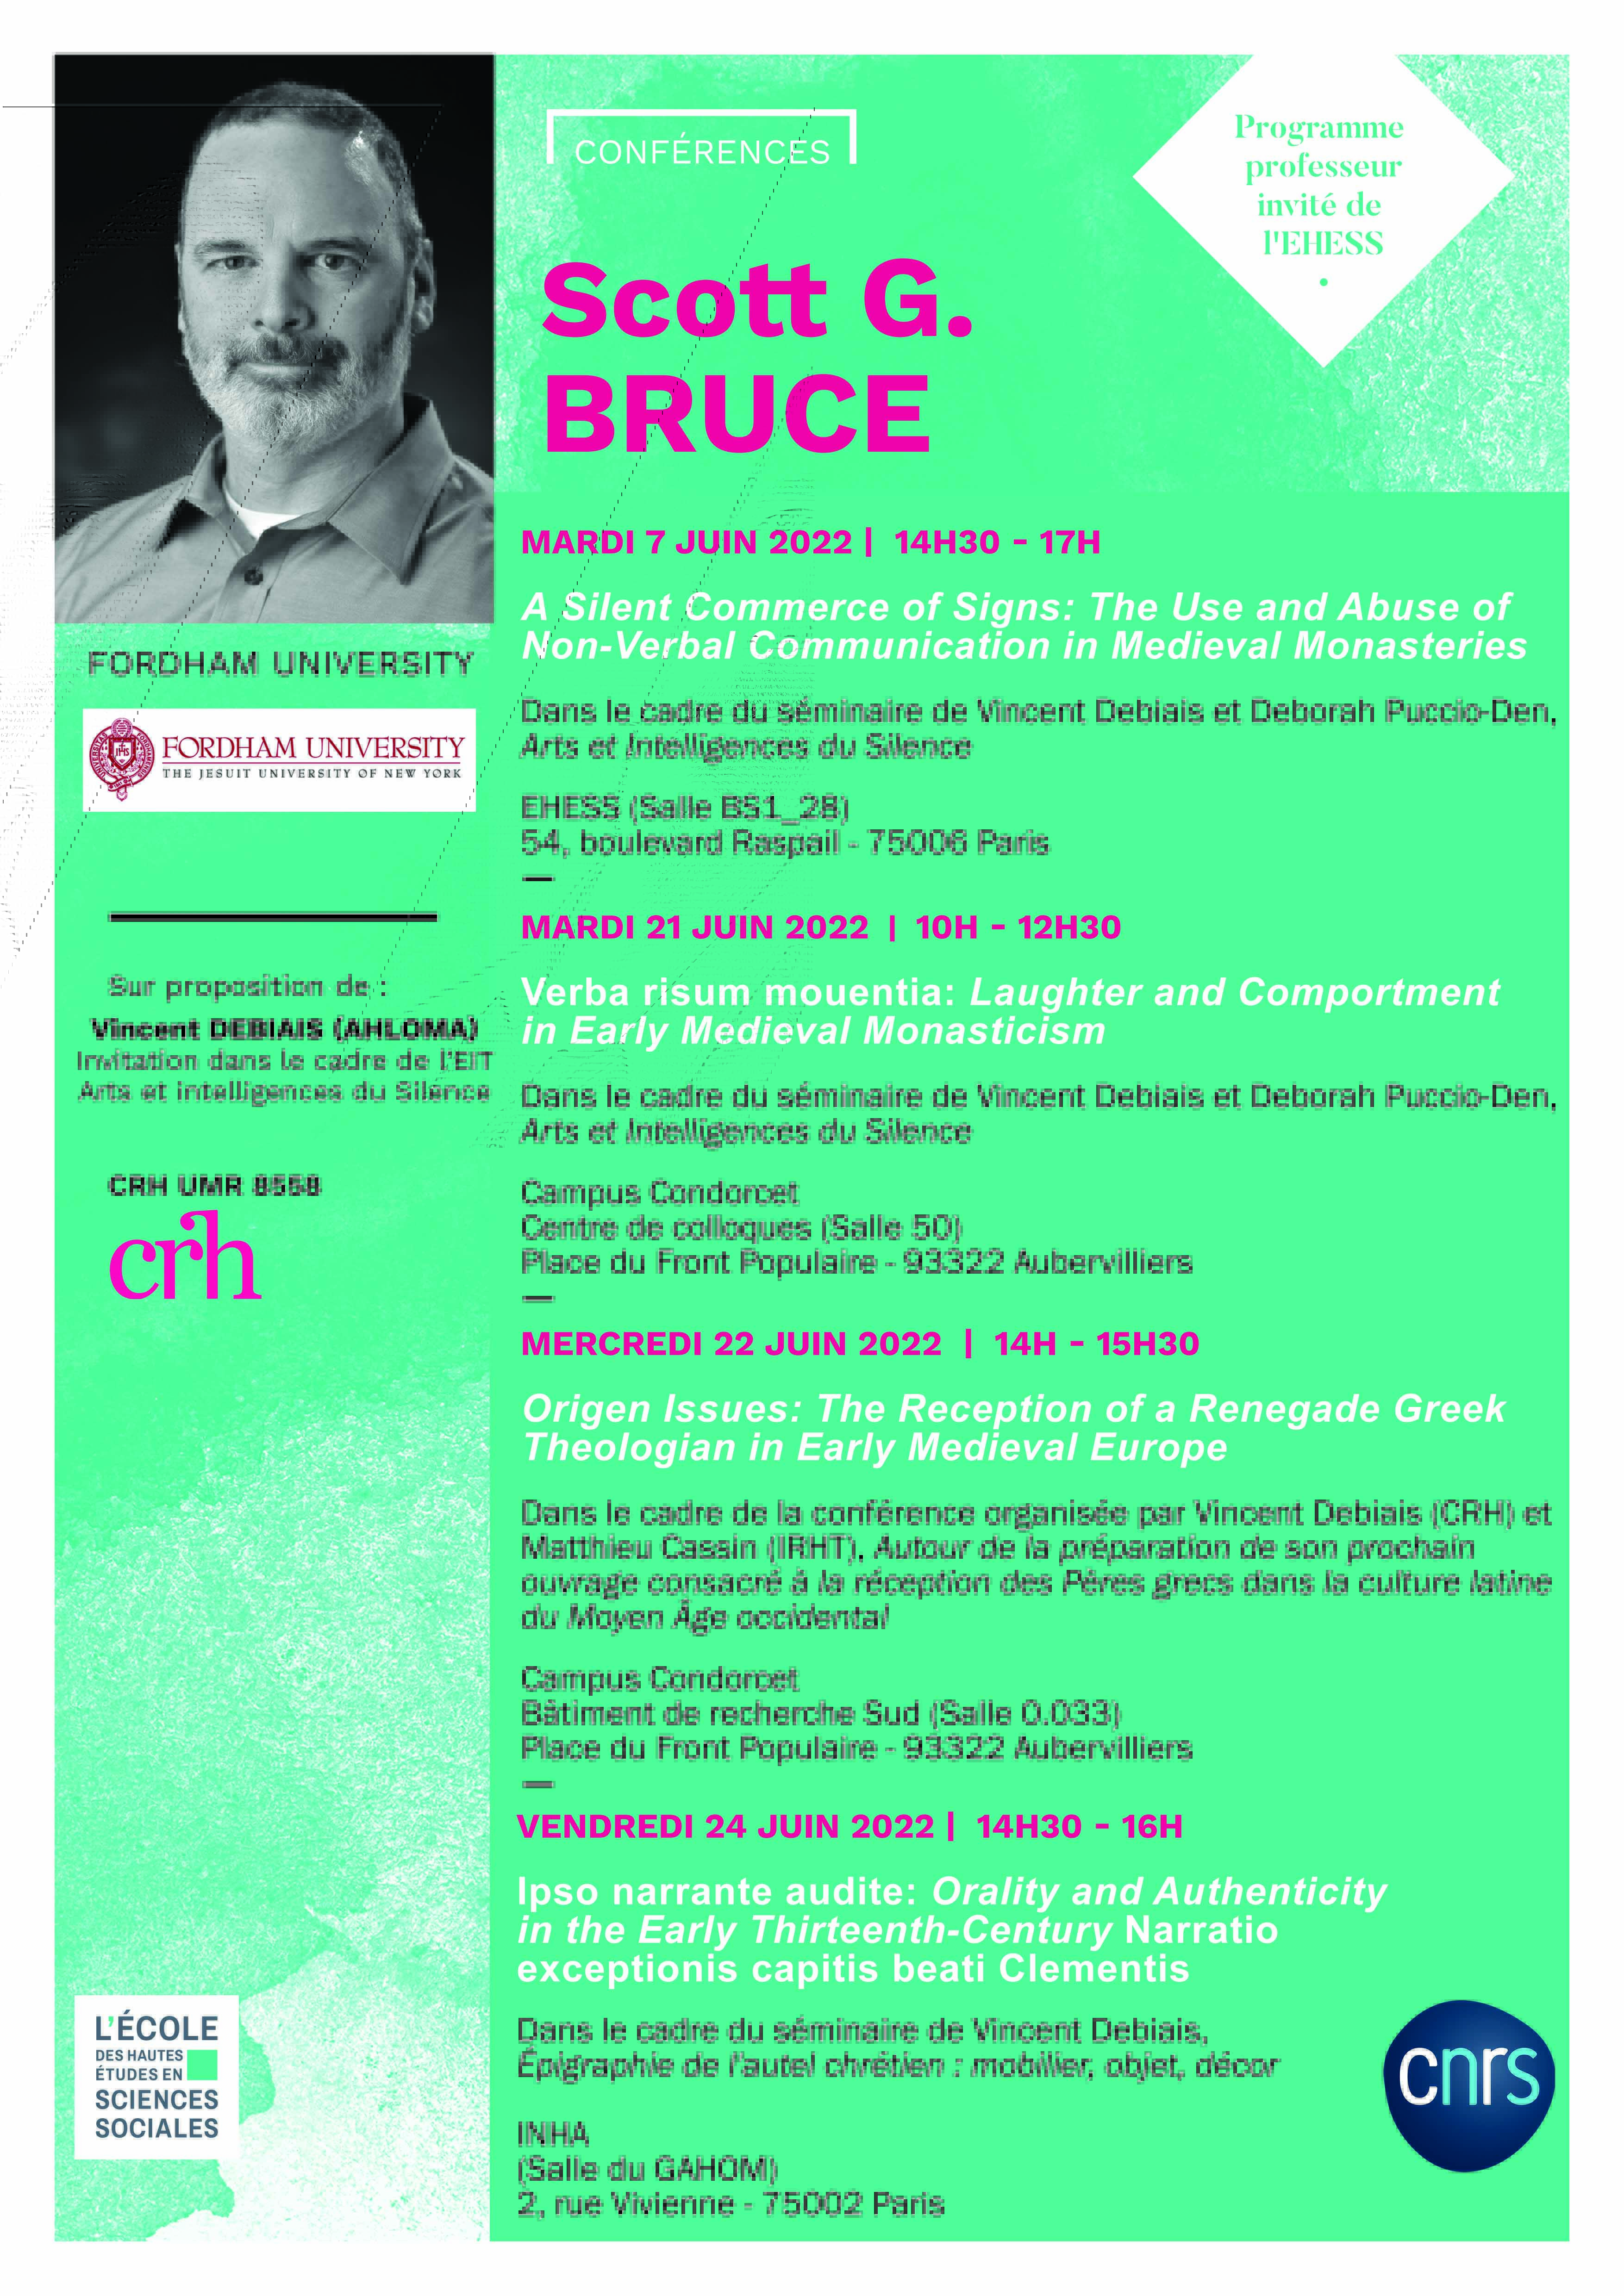 Conférences de Scott G. Bruce (Fordham University)